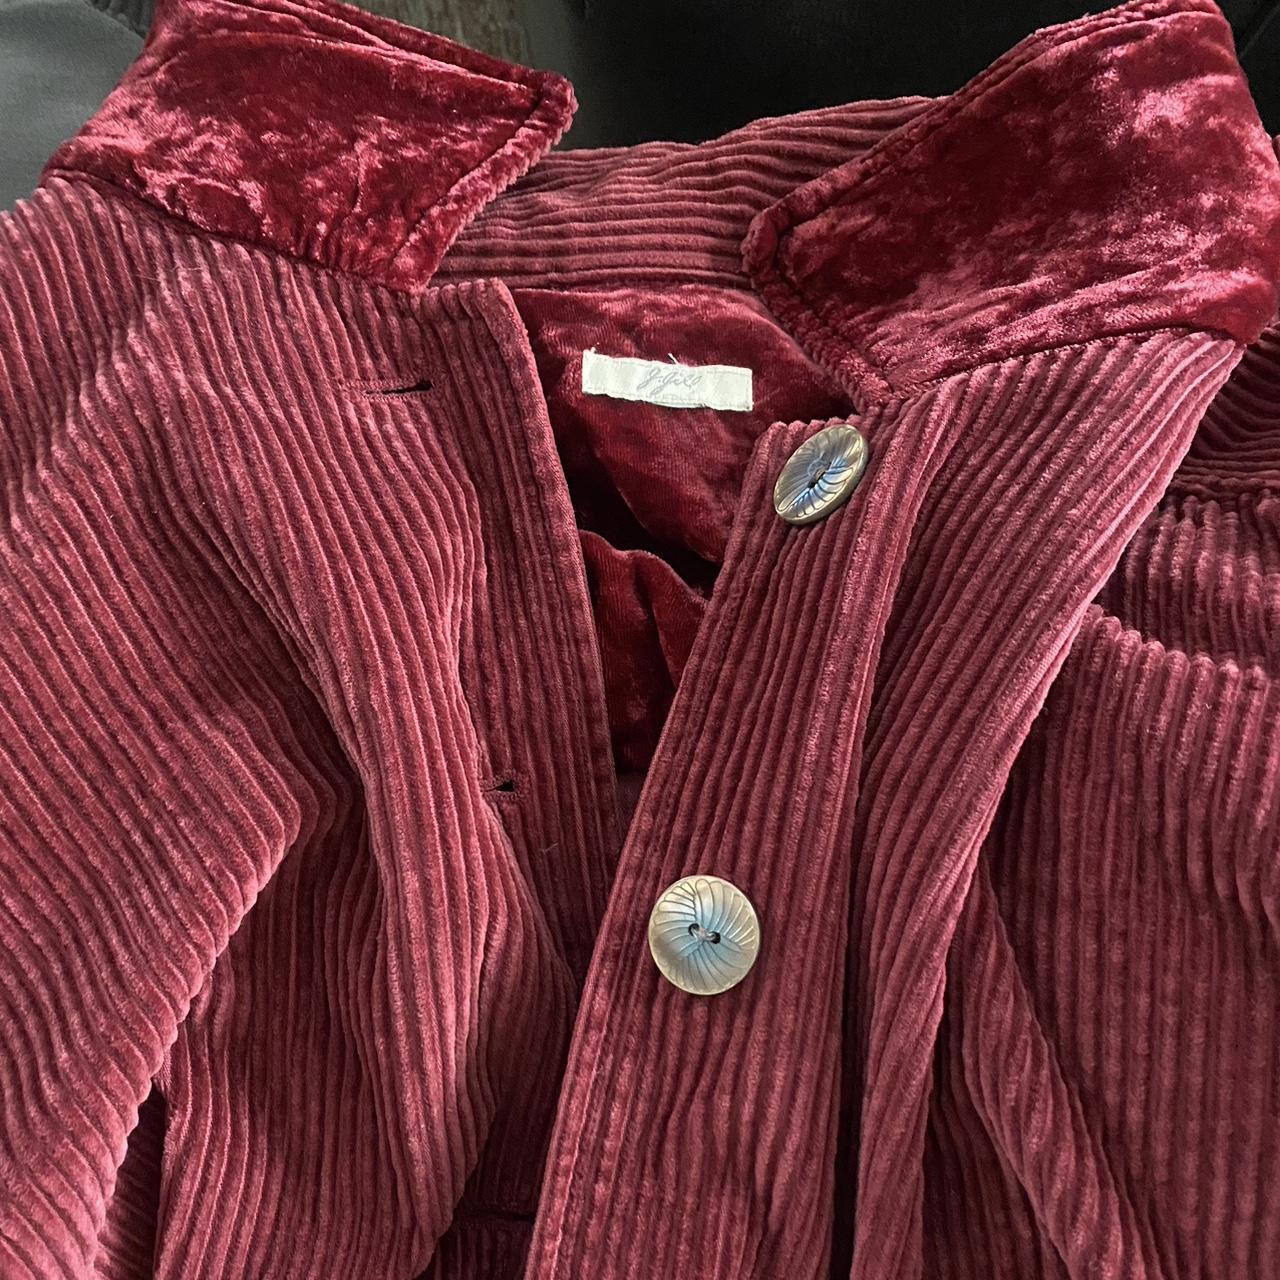 J. Jill XL red linen jacket. Super soft, - Depop